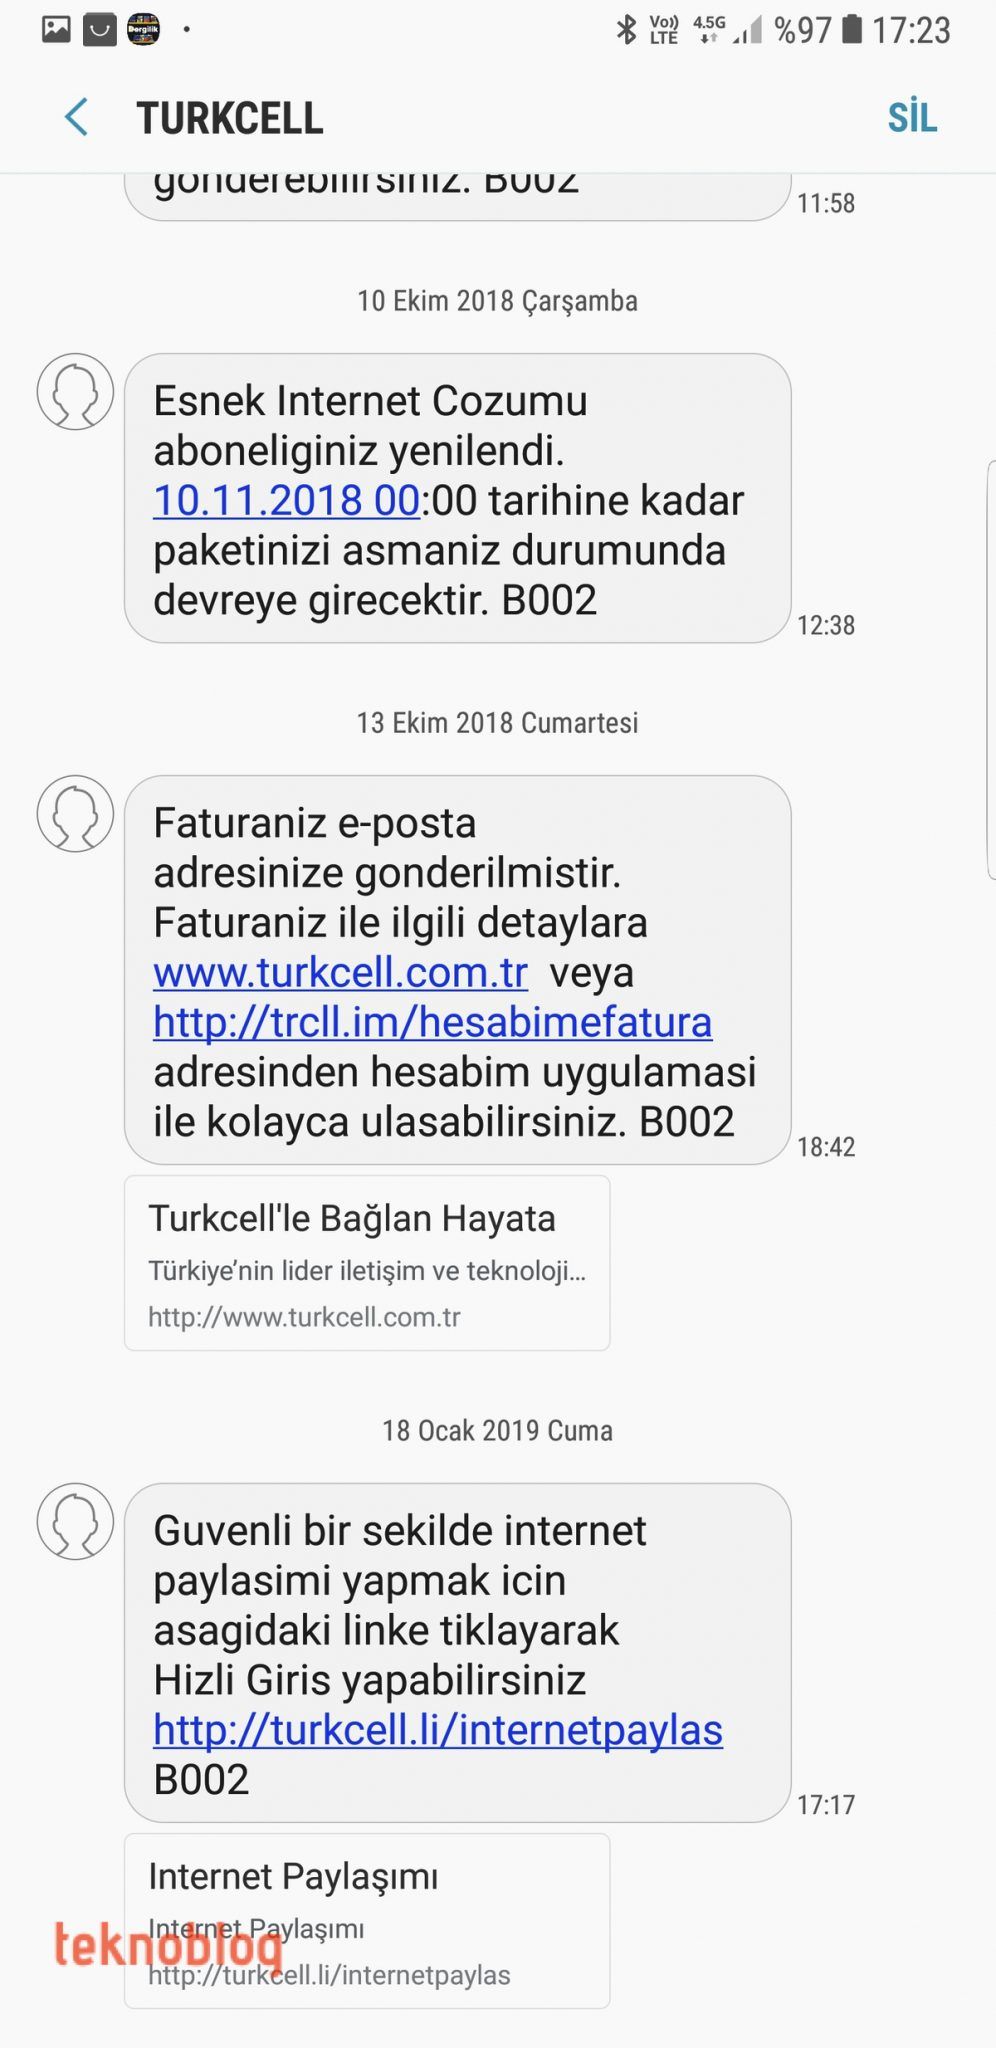 turkcell hızlı giriş internet paylaşımı